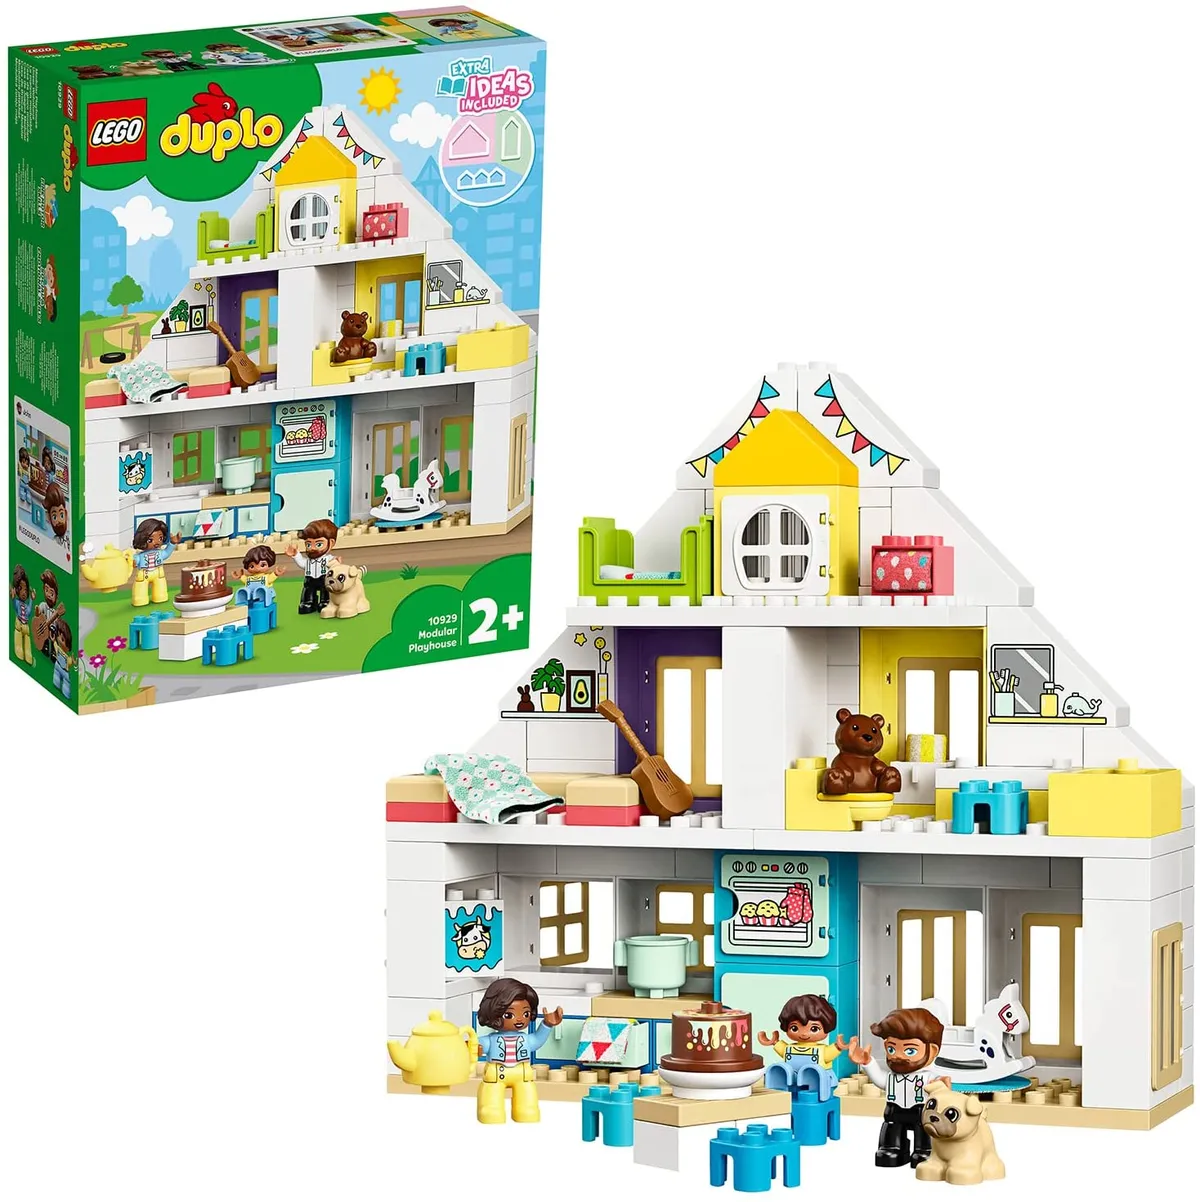 Lego Duplo Set Town Playhouse